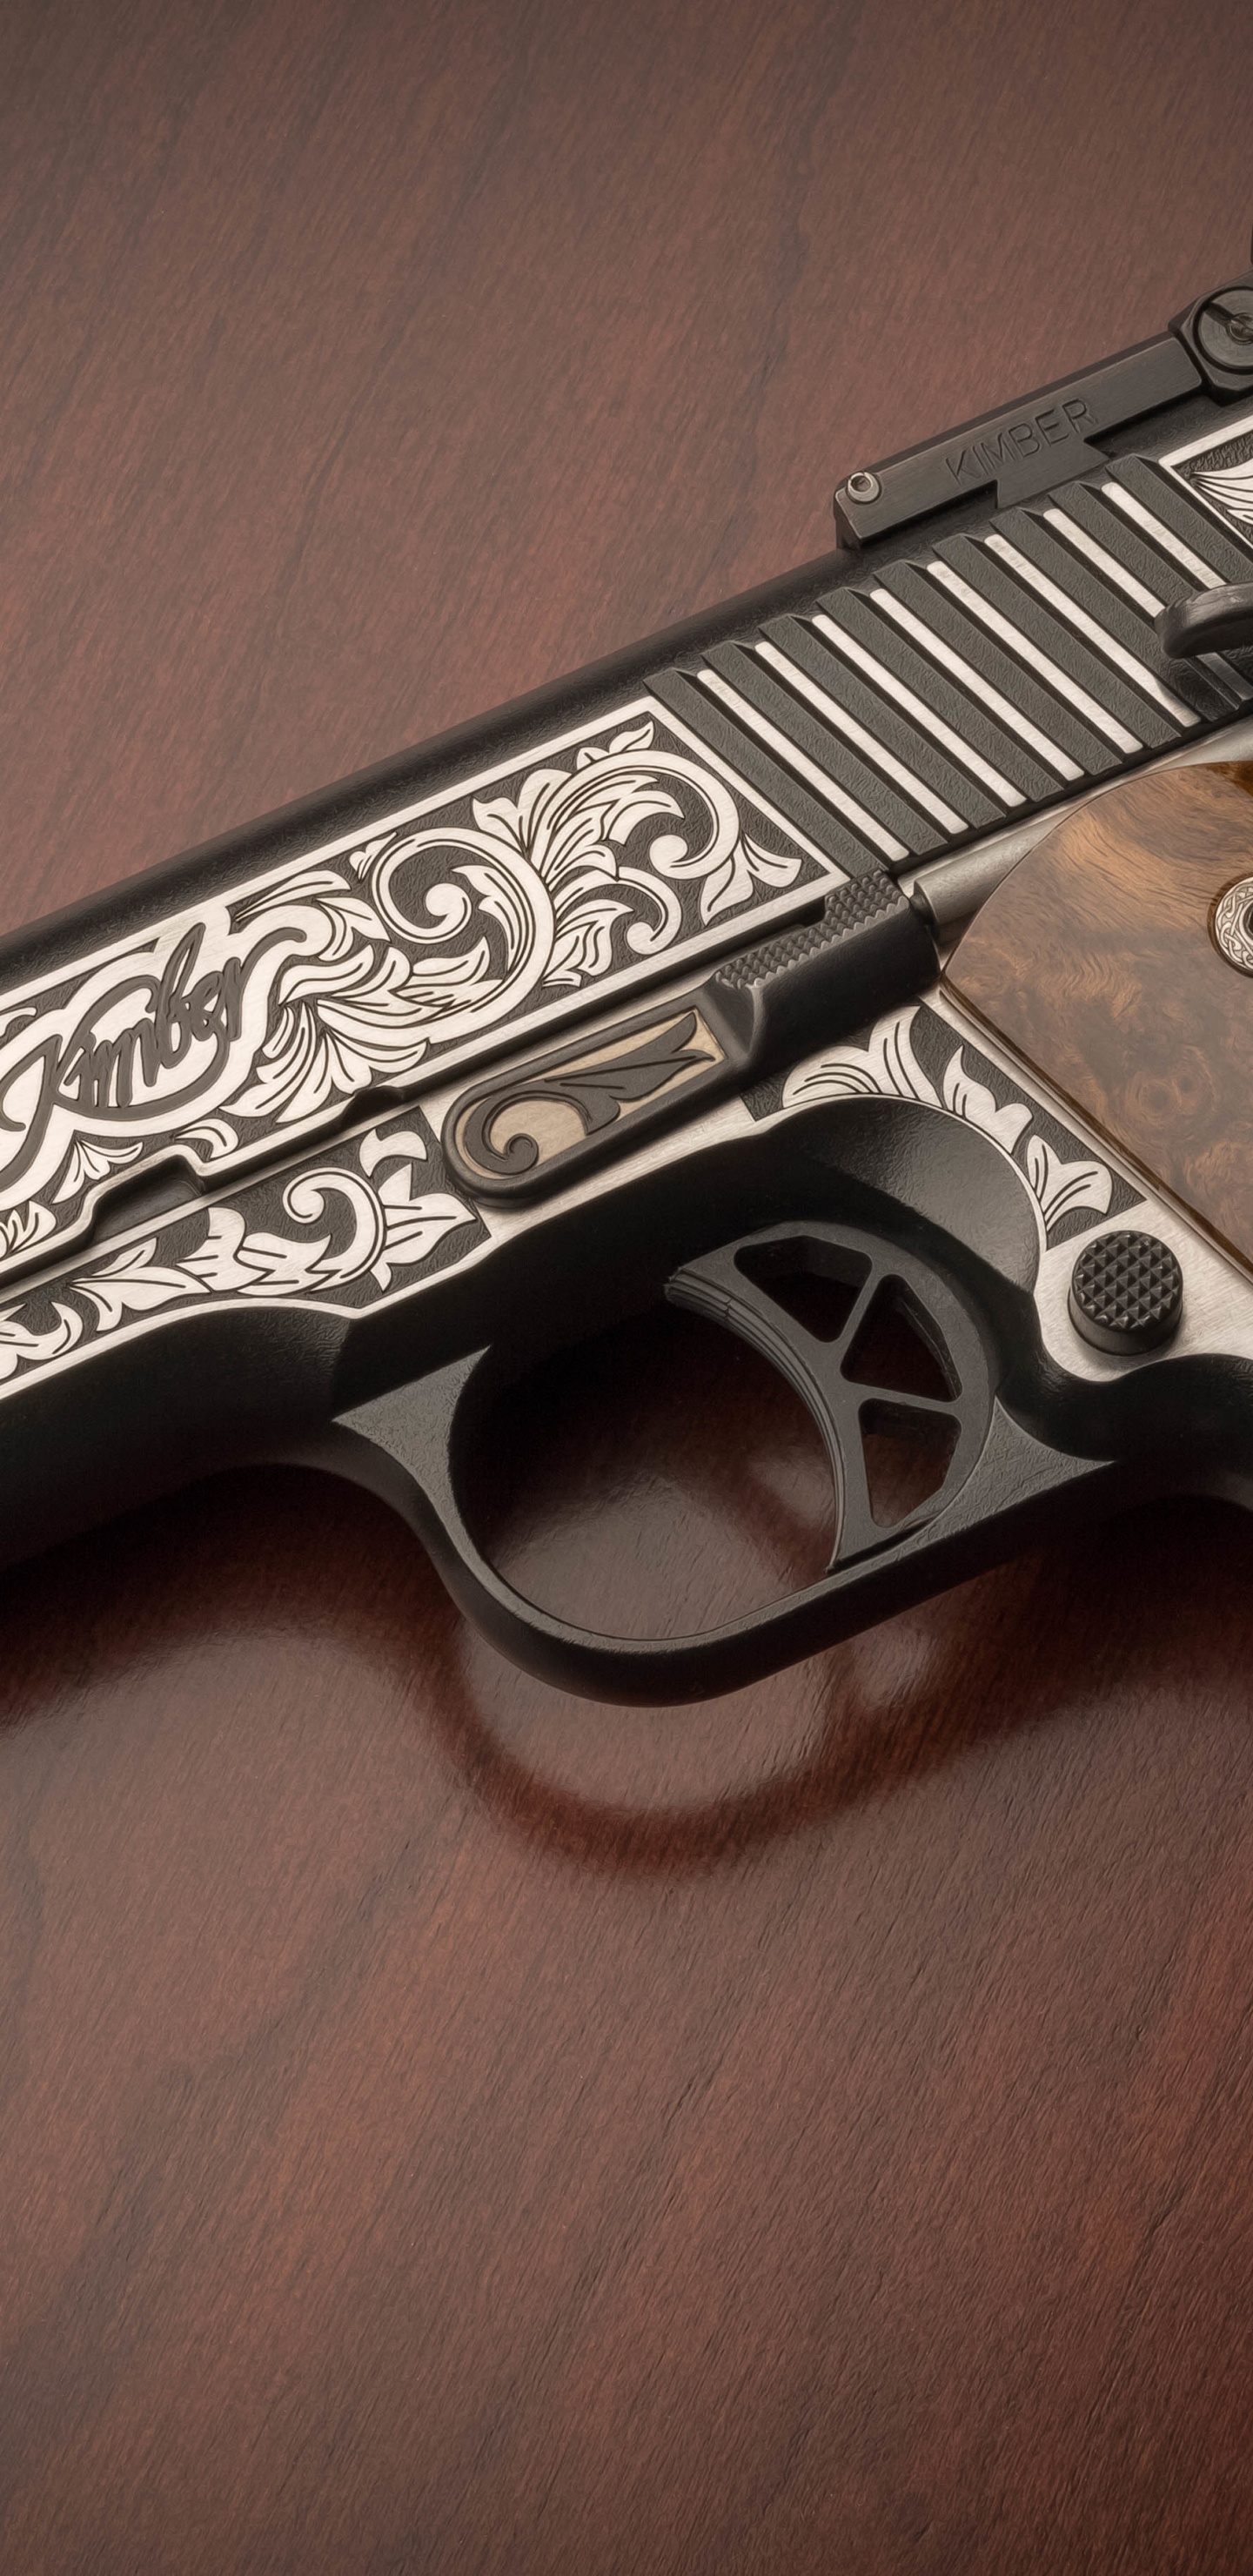 M1911 Pistole, Feuerwaffe, Trigger, Gun Barrel, Pistole Zubehör. Wallpaper in 1440x2960 Resolution